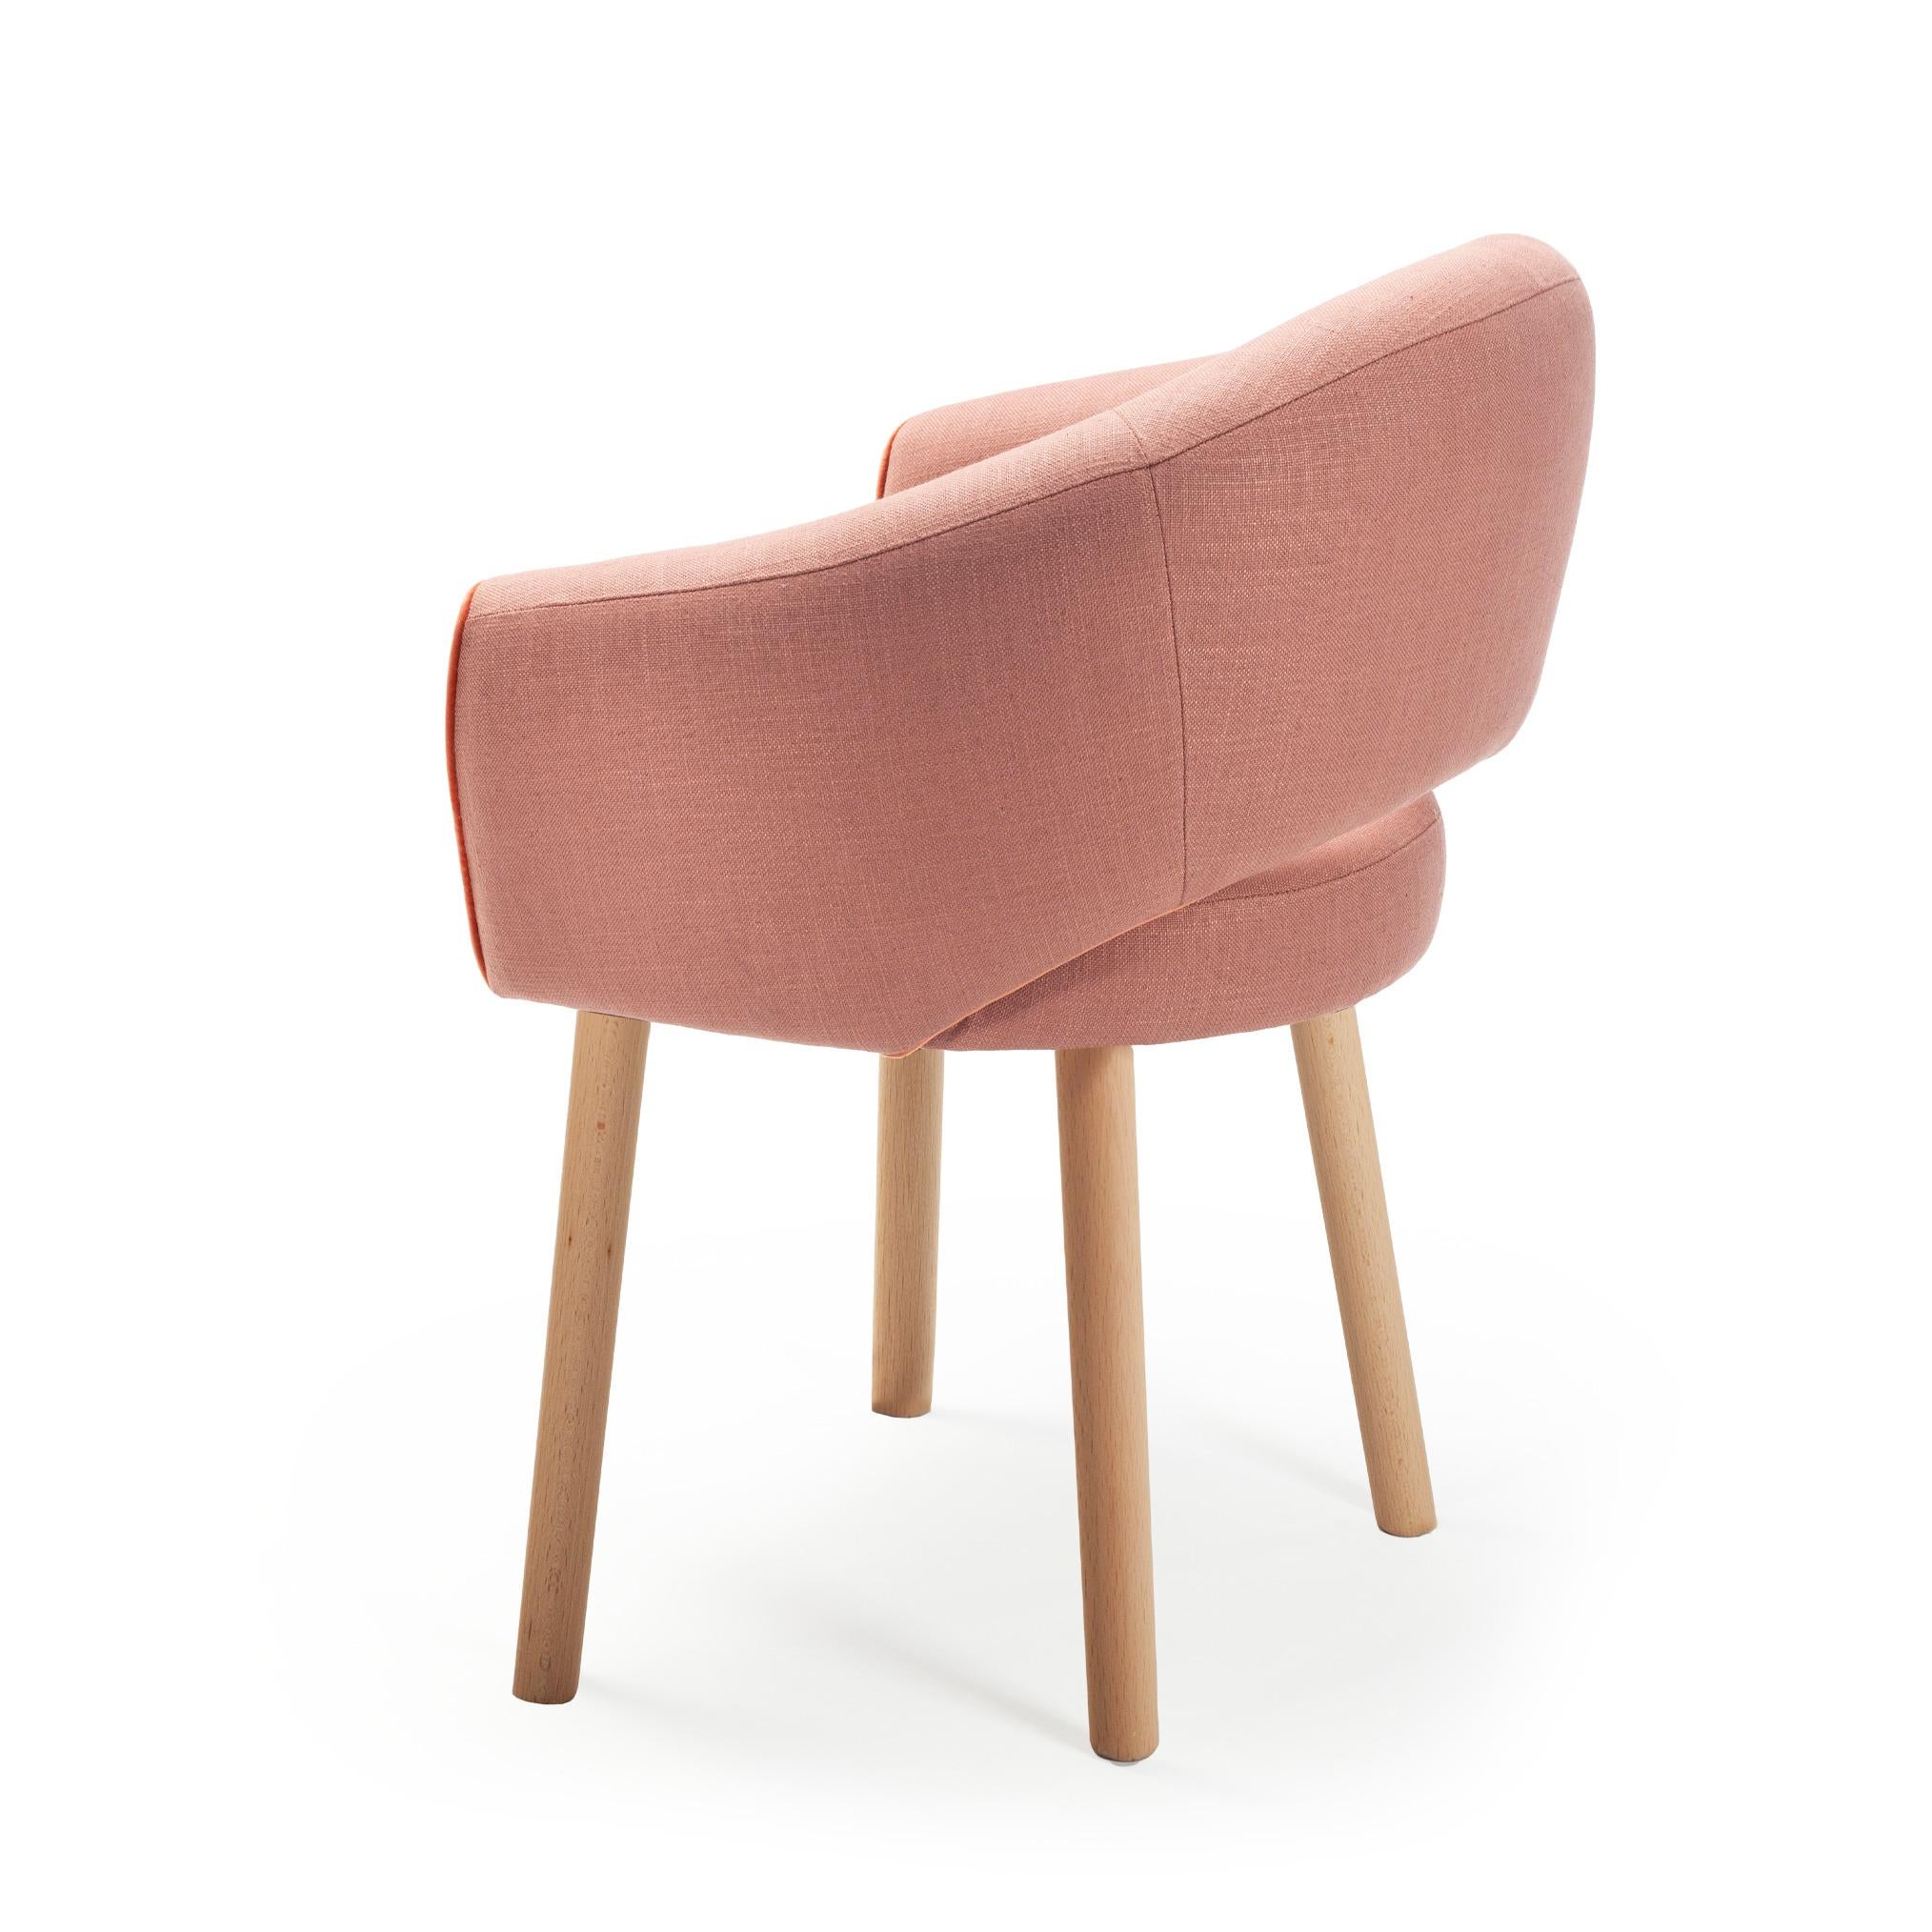 Der stilvolle und elegante Stuhl Grace ist durch seine perfekte Verarbeitung äußerst bequem. Mit seinen glatten Kanten hat Grace definitiv ein vertrautes Retro-Gefühl. Eine perfekte Kombination aus hochkomfortabler und perfekt zugeschnittener